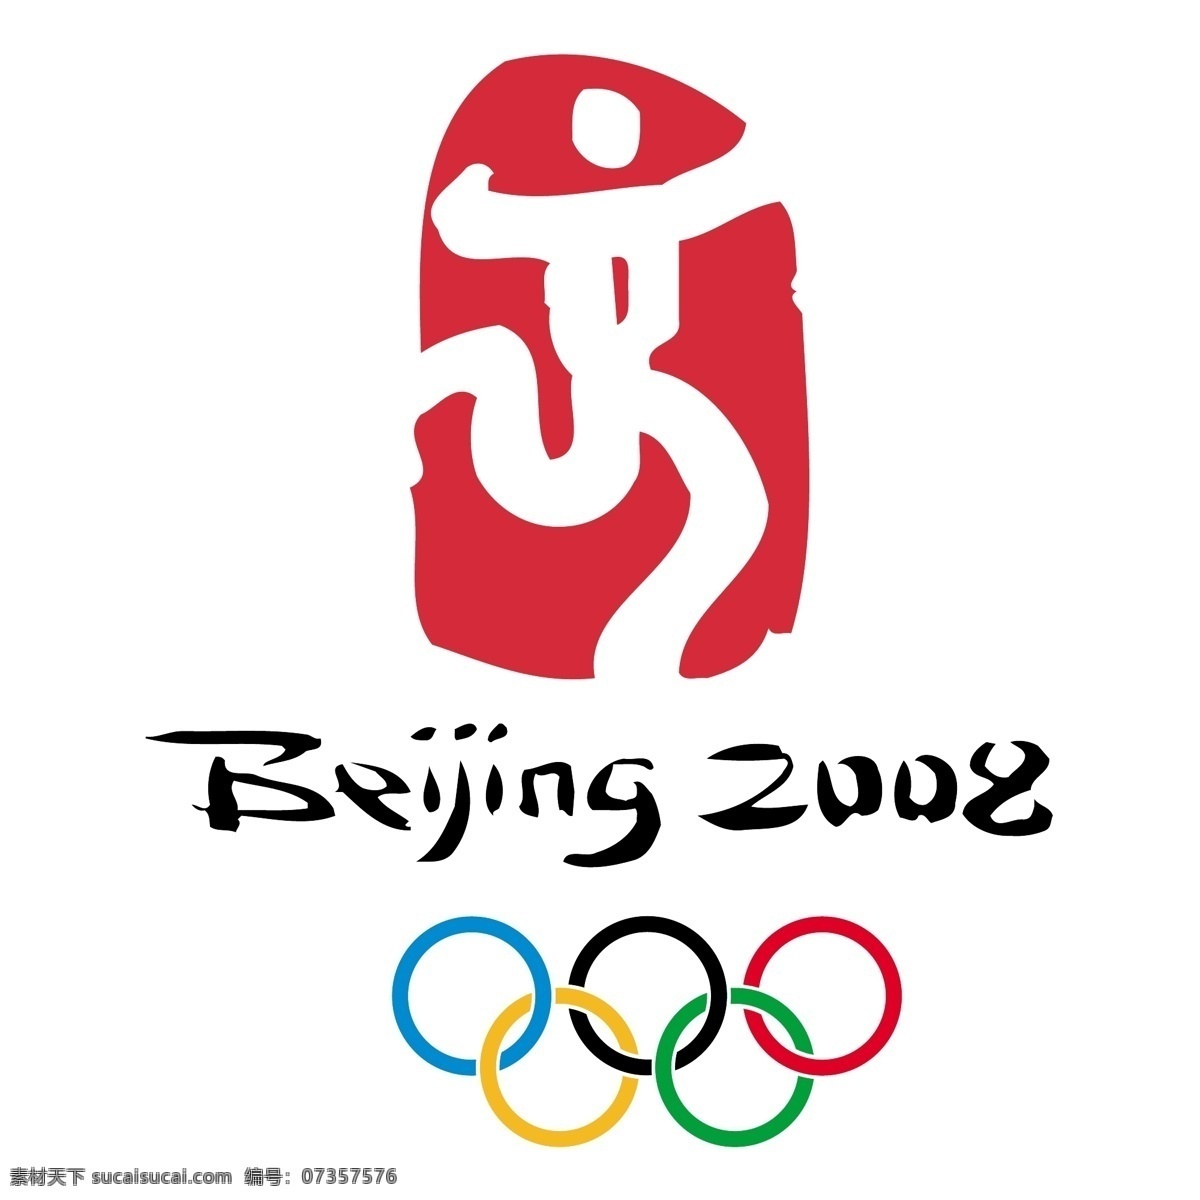 1北京 矢量图标 自由 北京2008 北京 2008 标志 矢量 奥运会 福娃 北京艺术